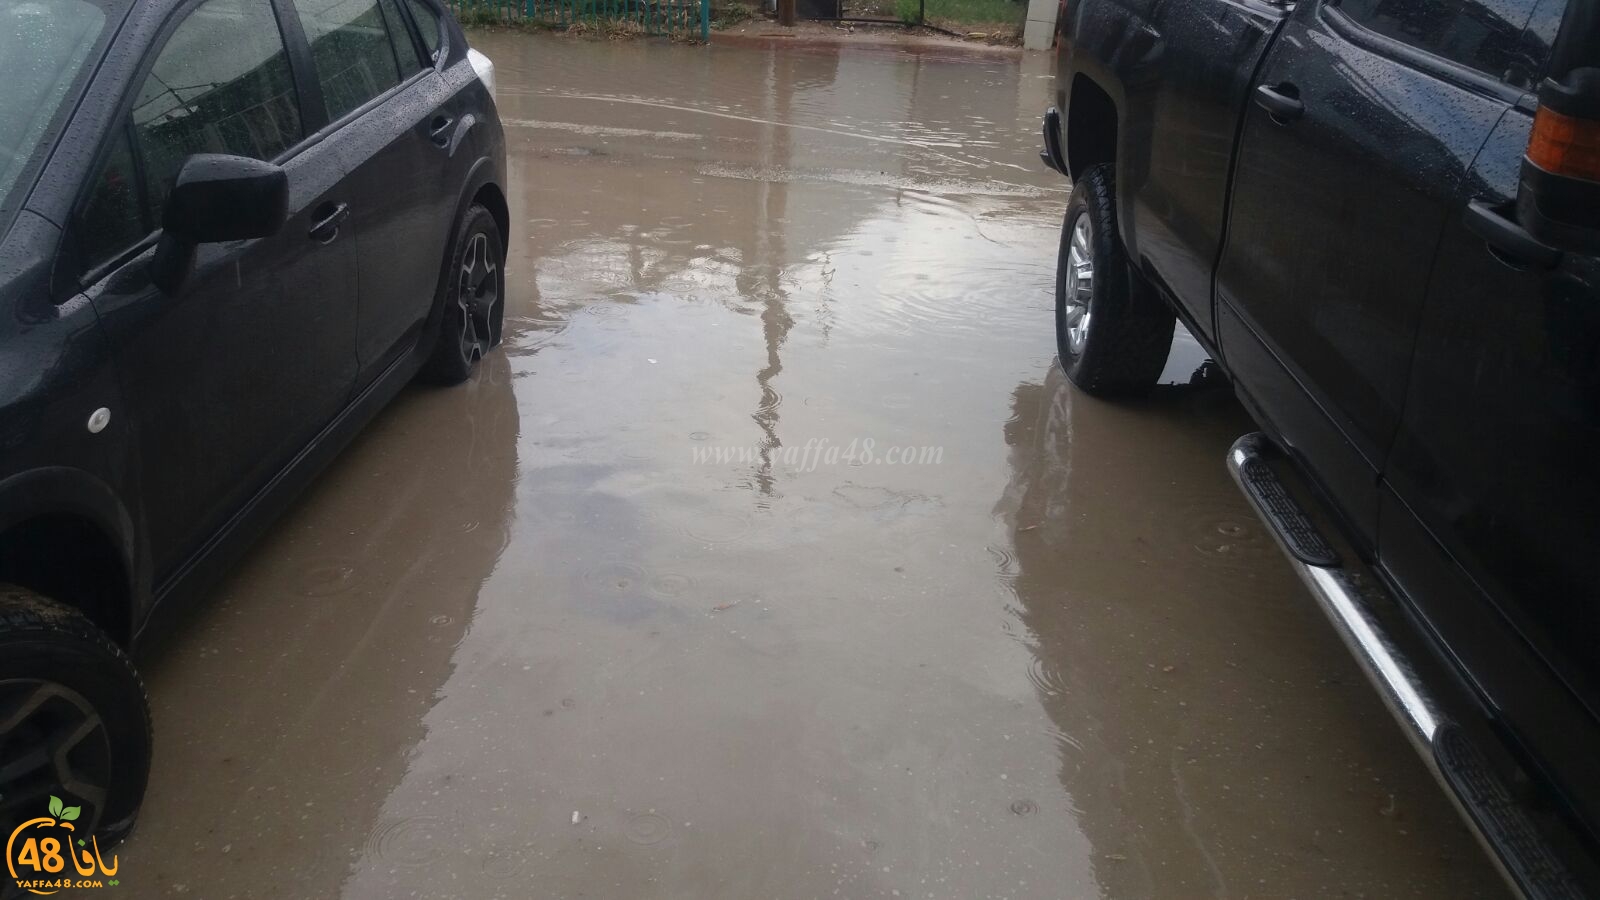   فيديو: أمطار غزيرة تهطل على مدينة اللد والسكان يشتكون ضعف البنية التحتية 